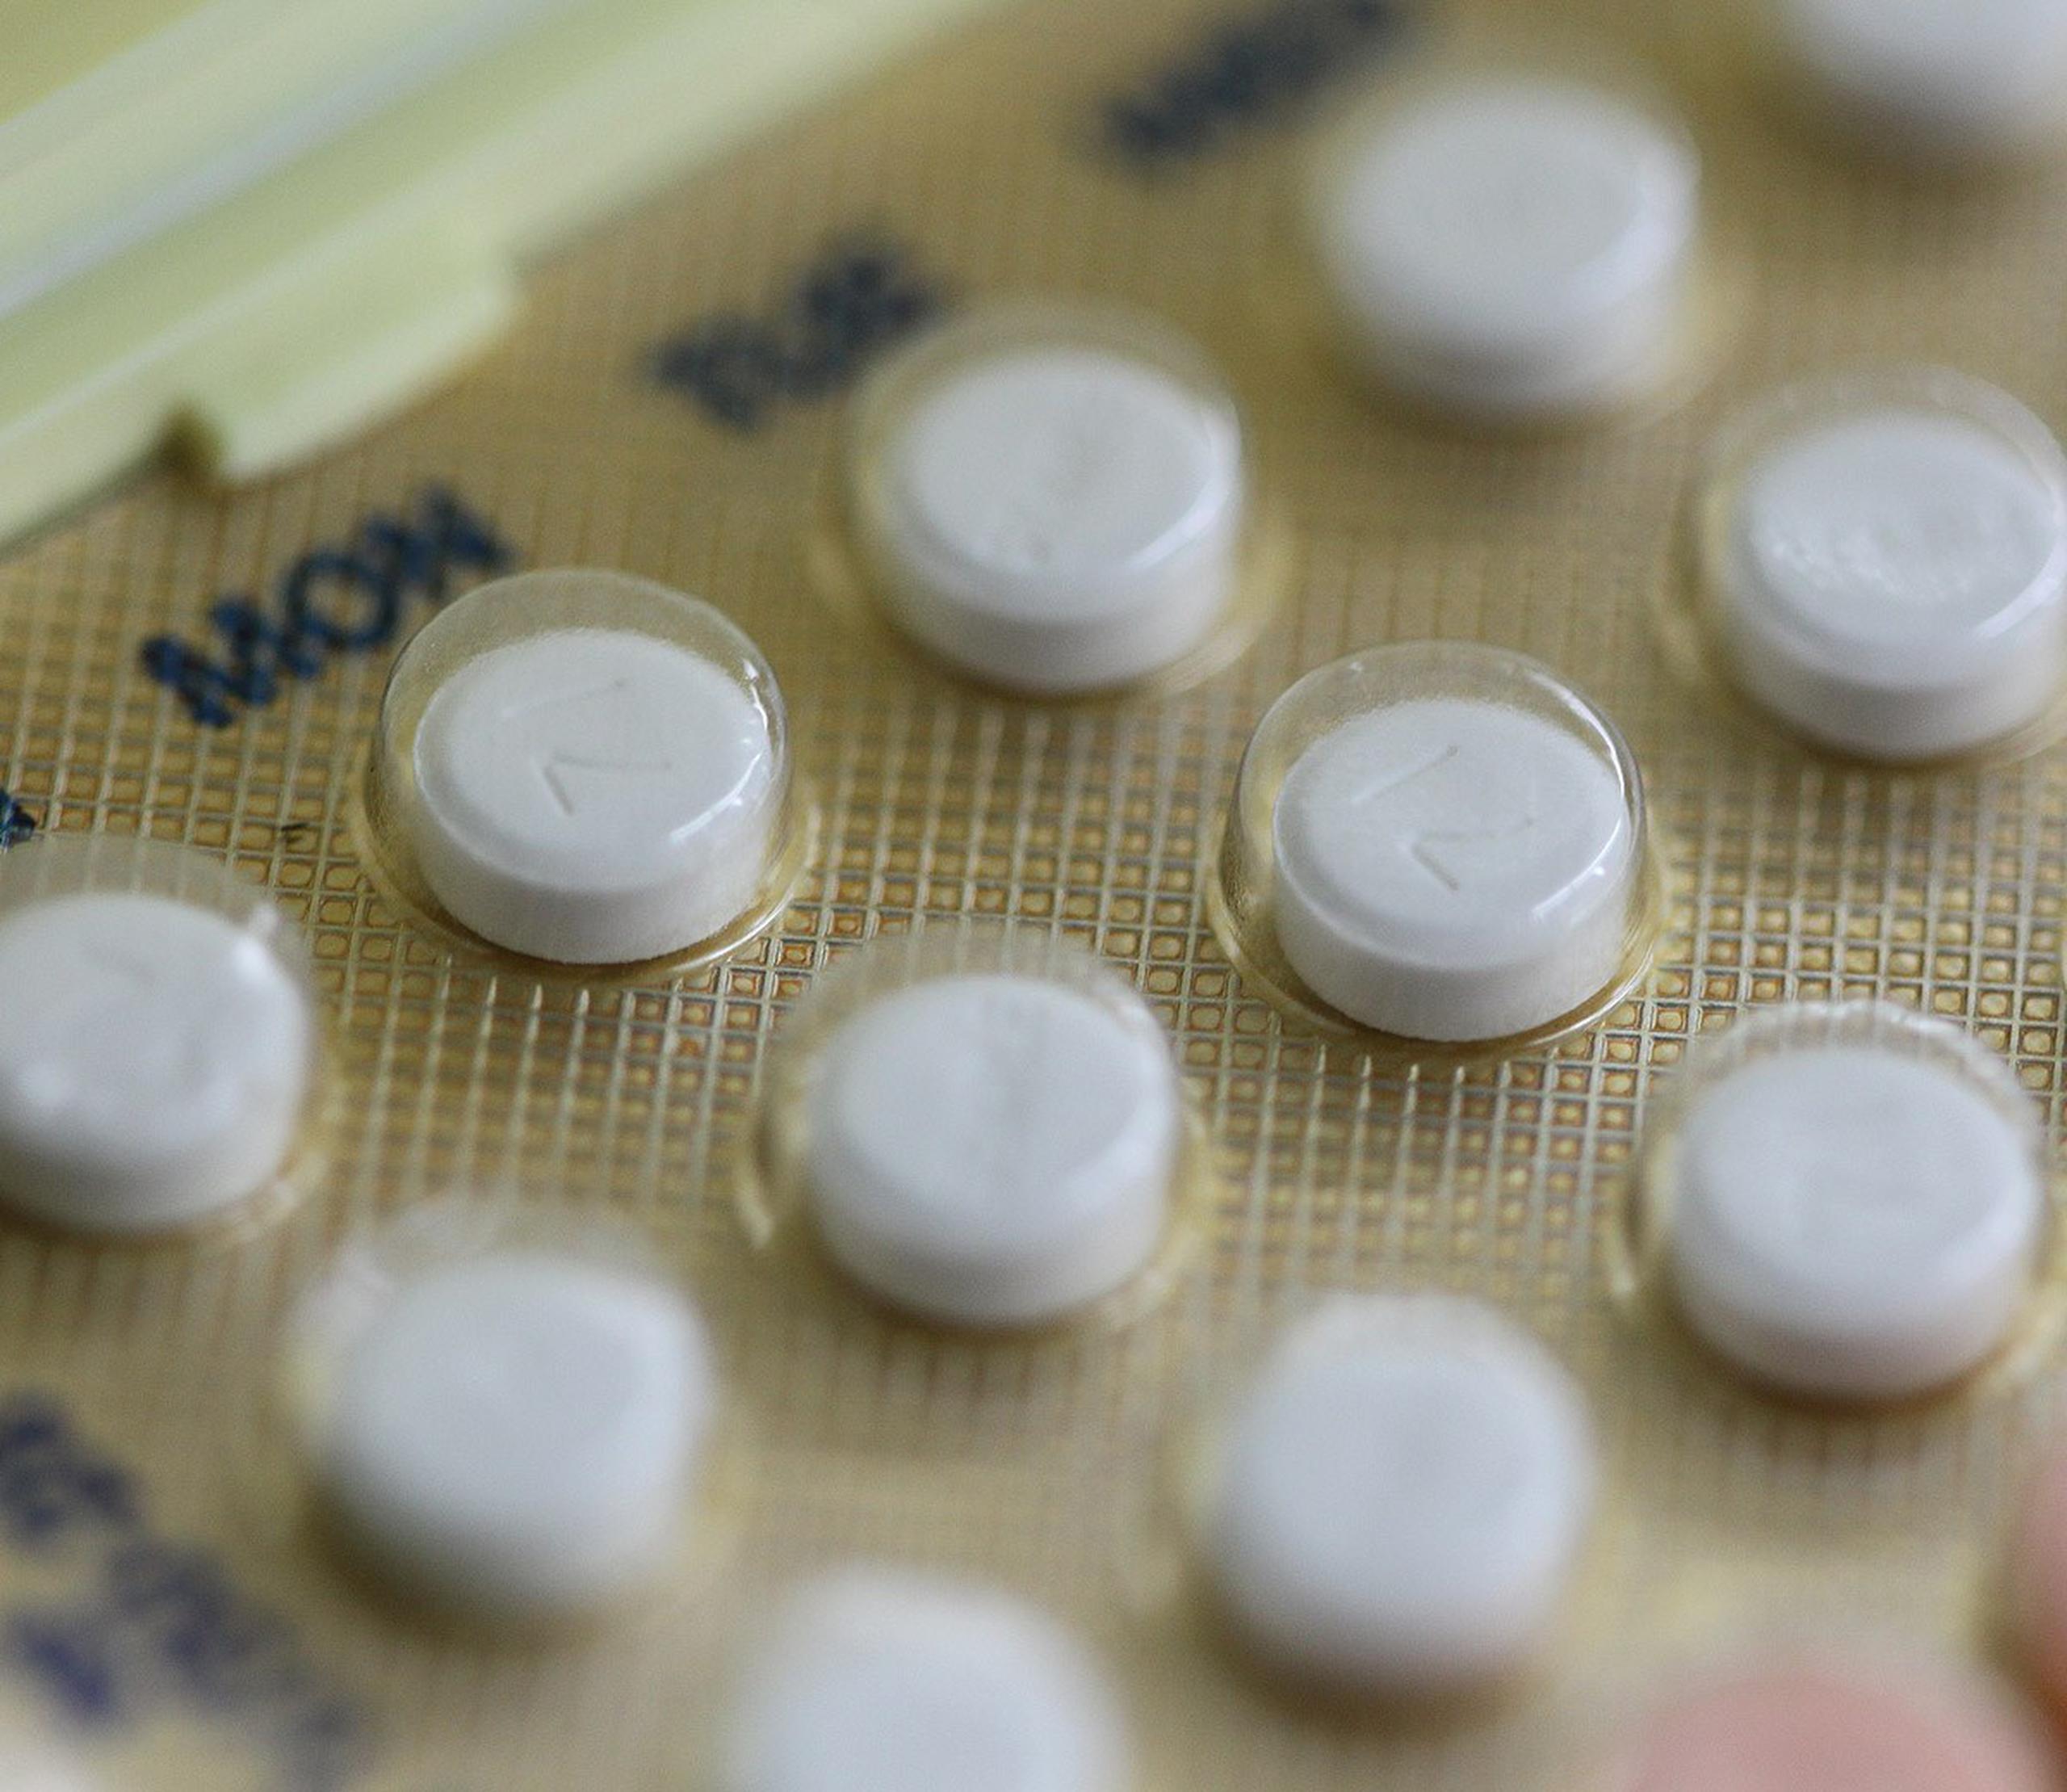 Previo a esta nueva política, el plan de seguro del gobierno solo cubría anticonceptivos para el tratamiento de disfunción menstrual o para condiciones médicas no relacionadas al control de la natalidad. (GFR Media)